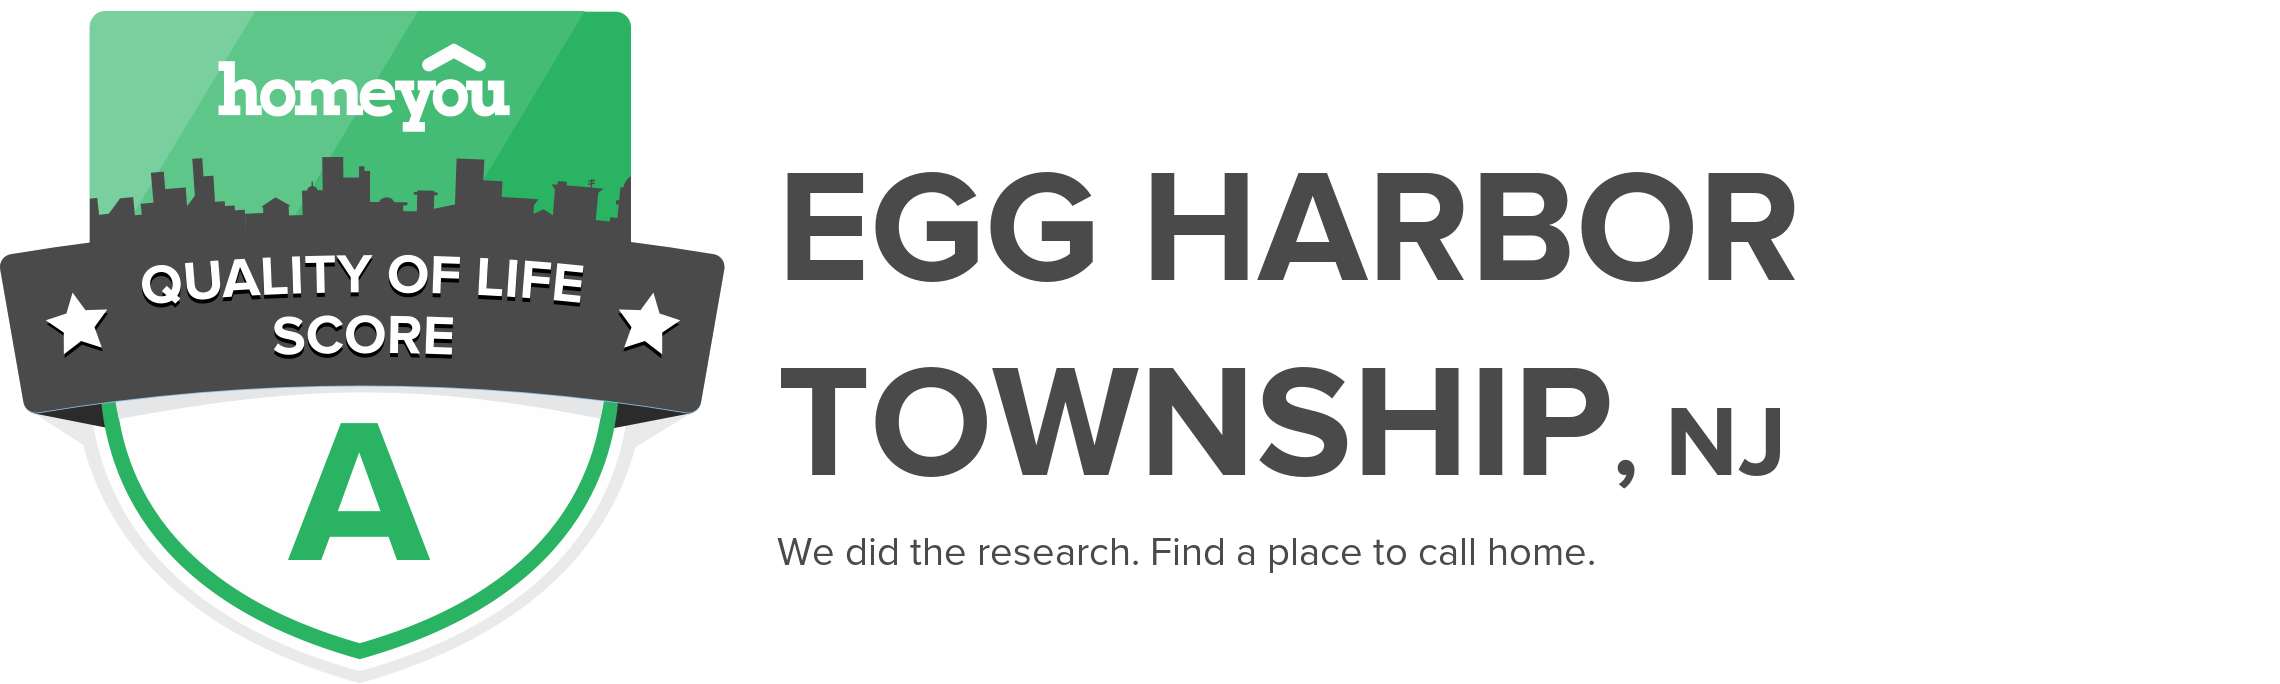 Egg Harbor Township, NJ